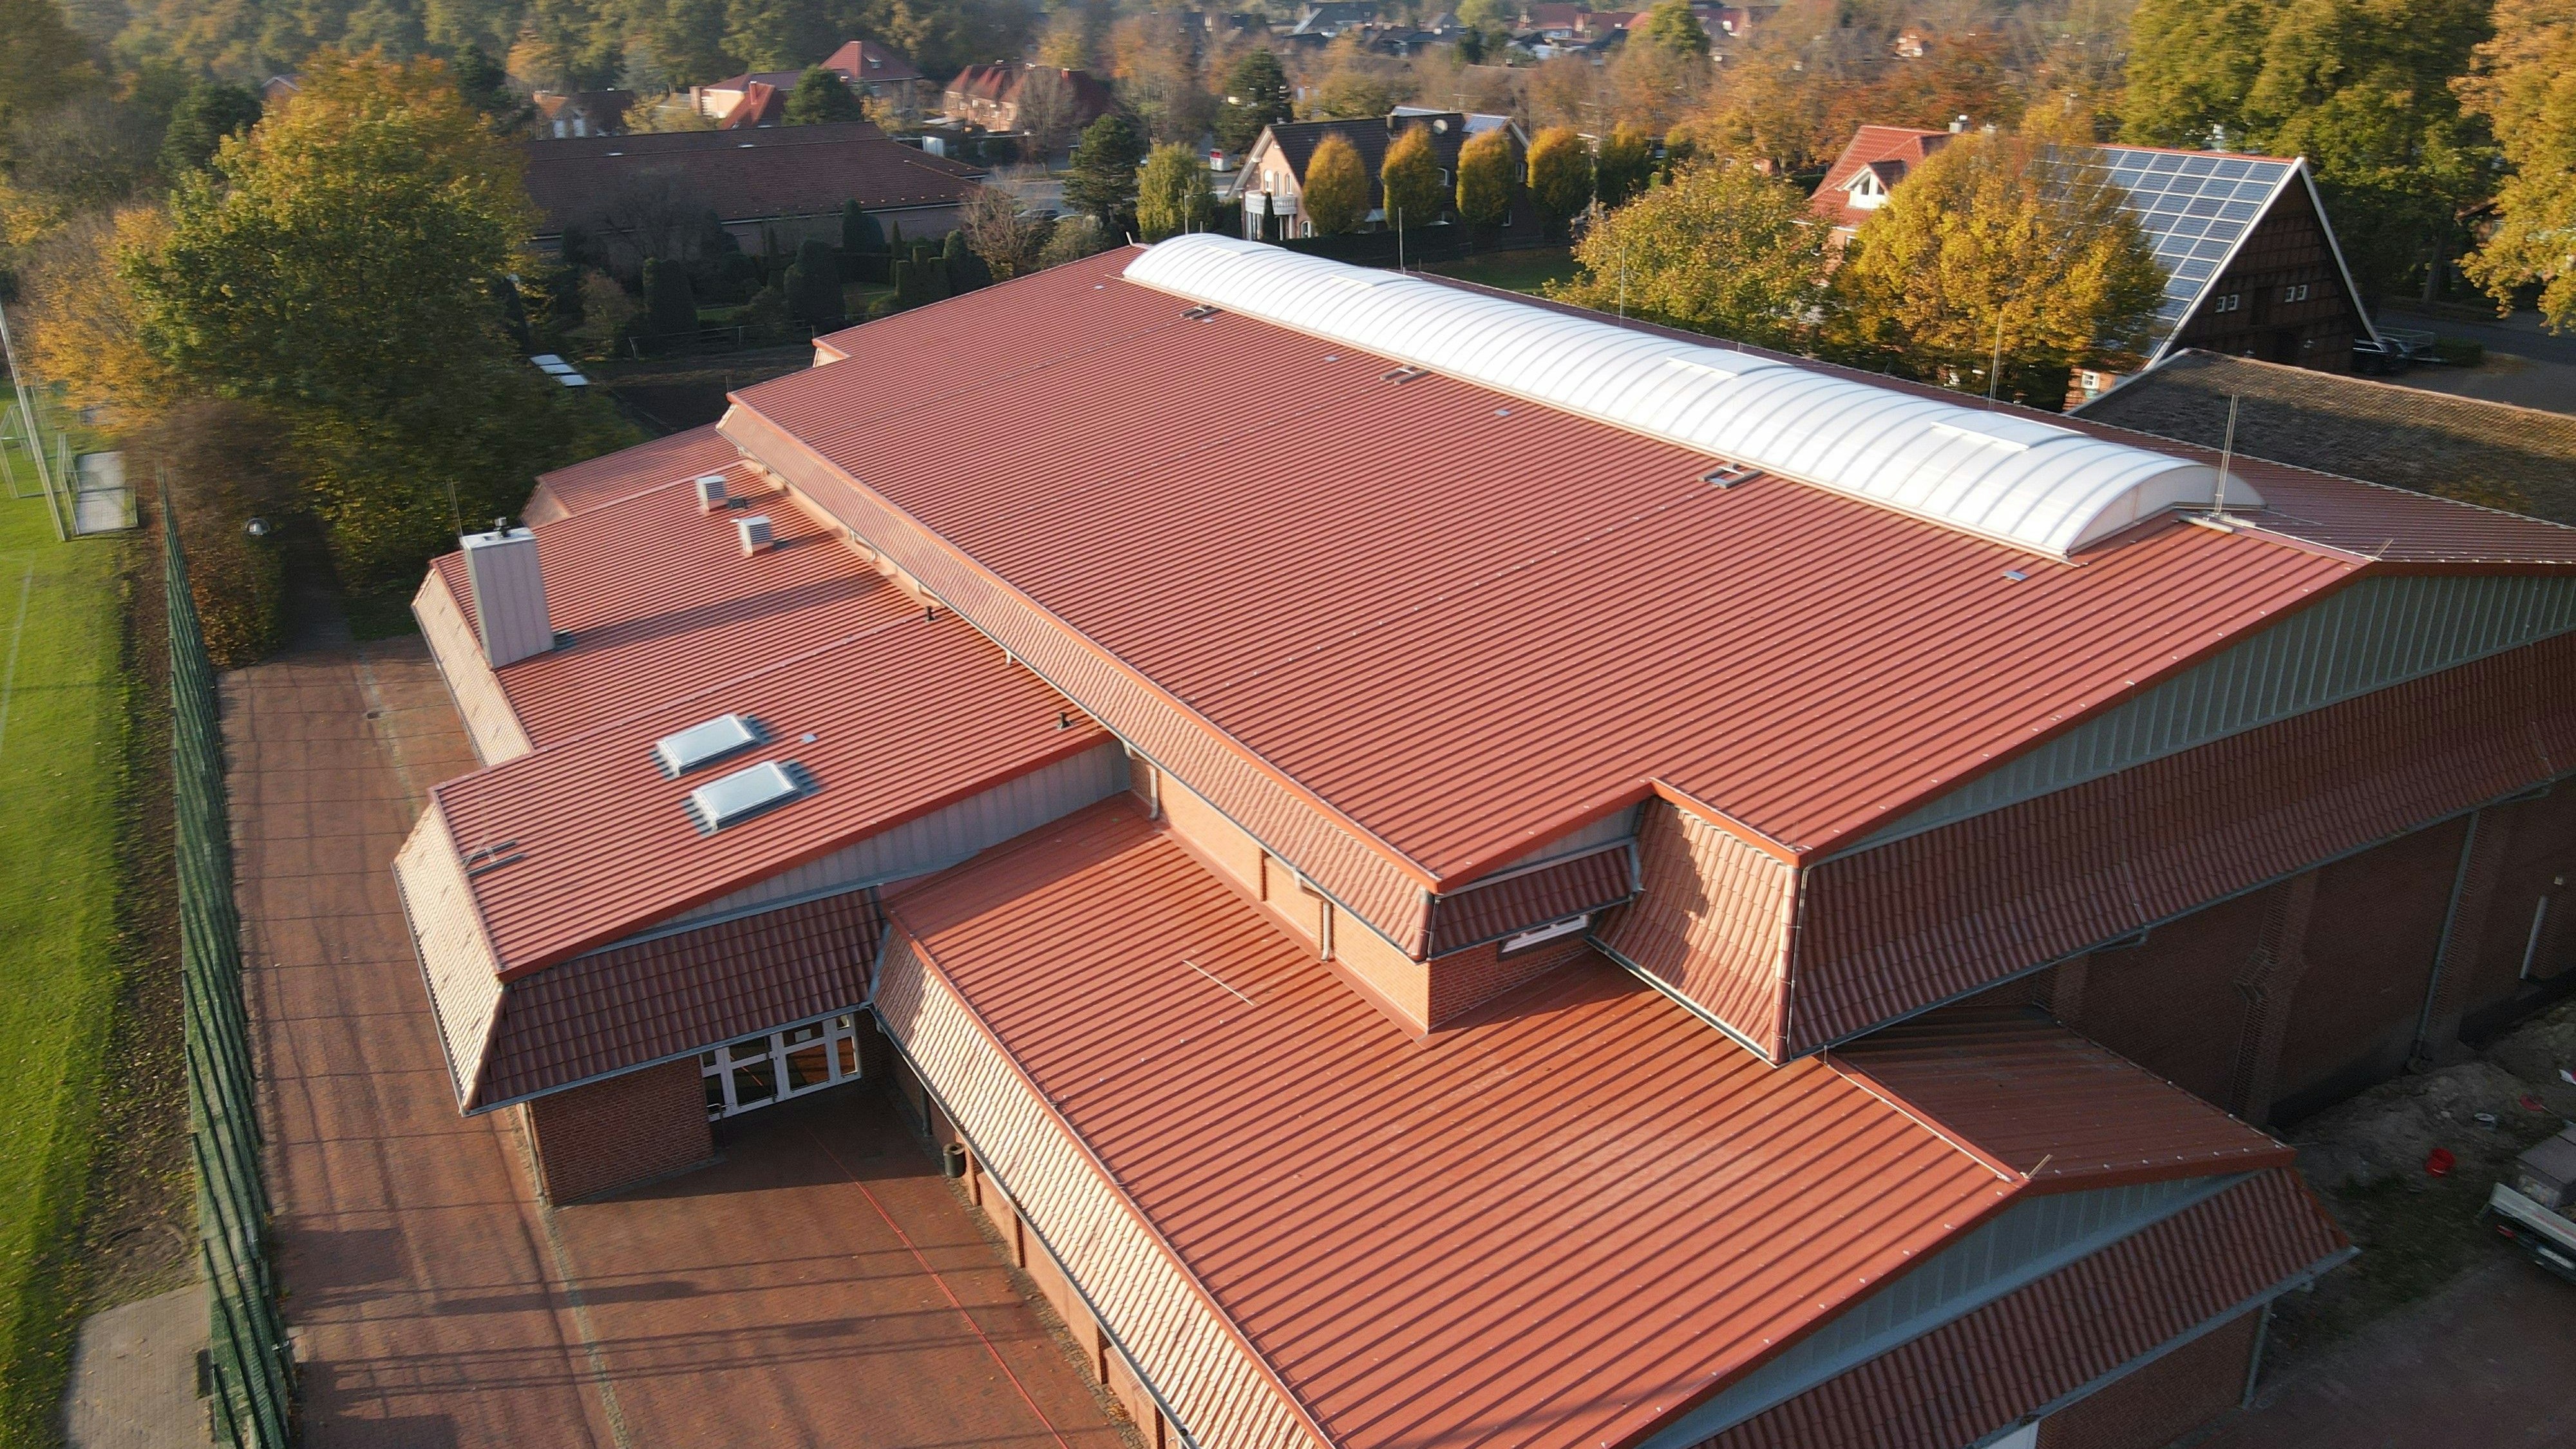 Neues Dach: 400.000 Euro hat alleine die Dachhaut gekostet. Die alten Pfannen hatten nach über 30 Jahren ihren Dienst getan. Foto: Gemeinde Cappeln